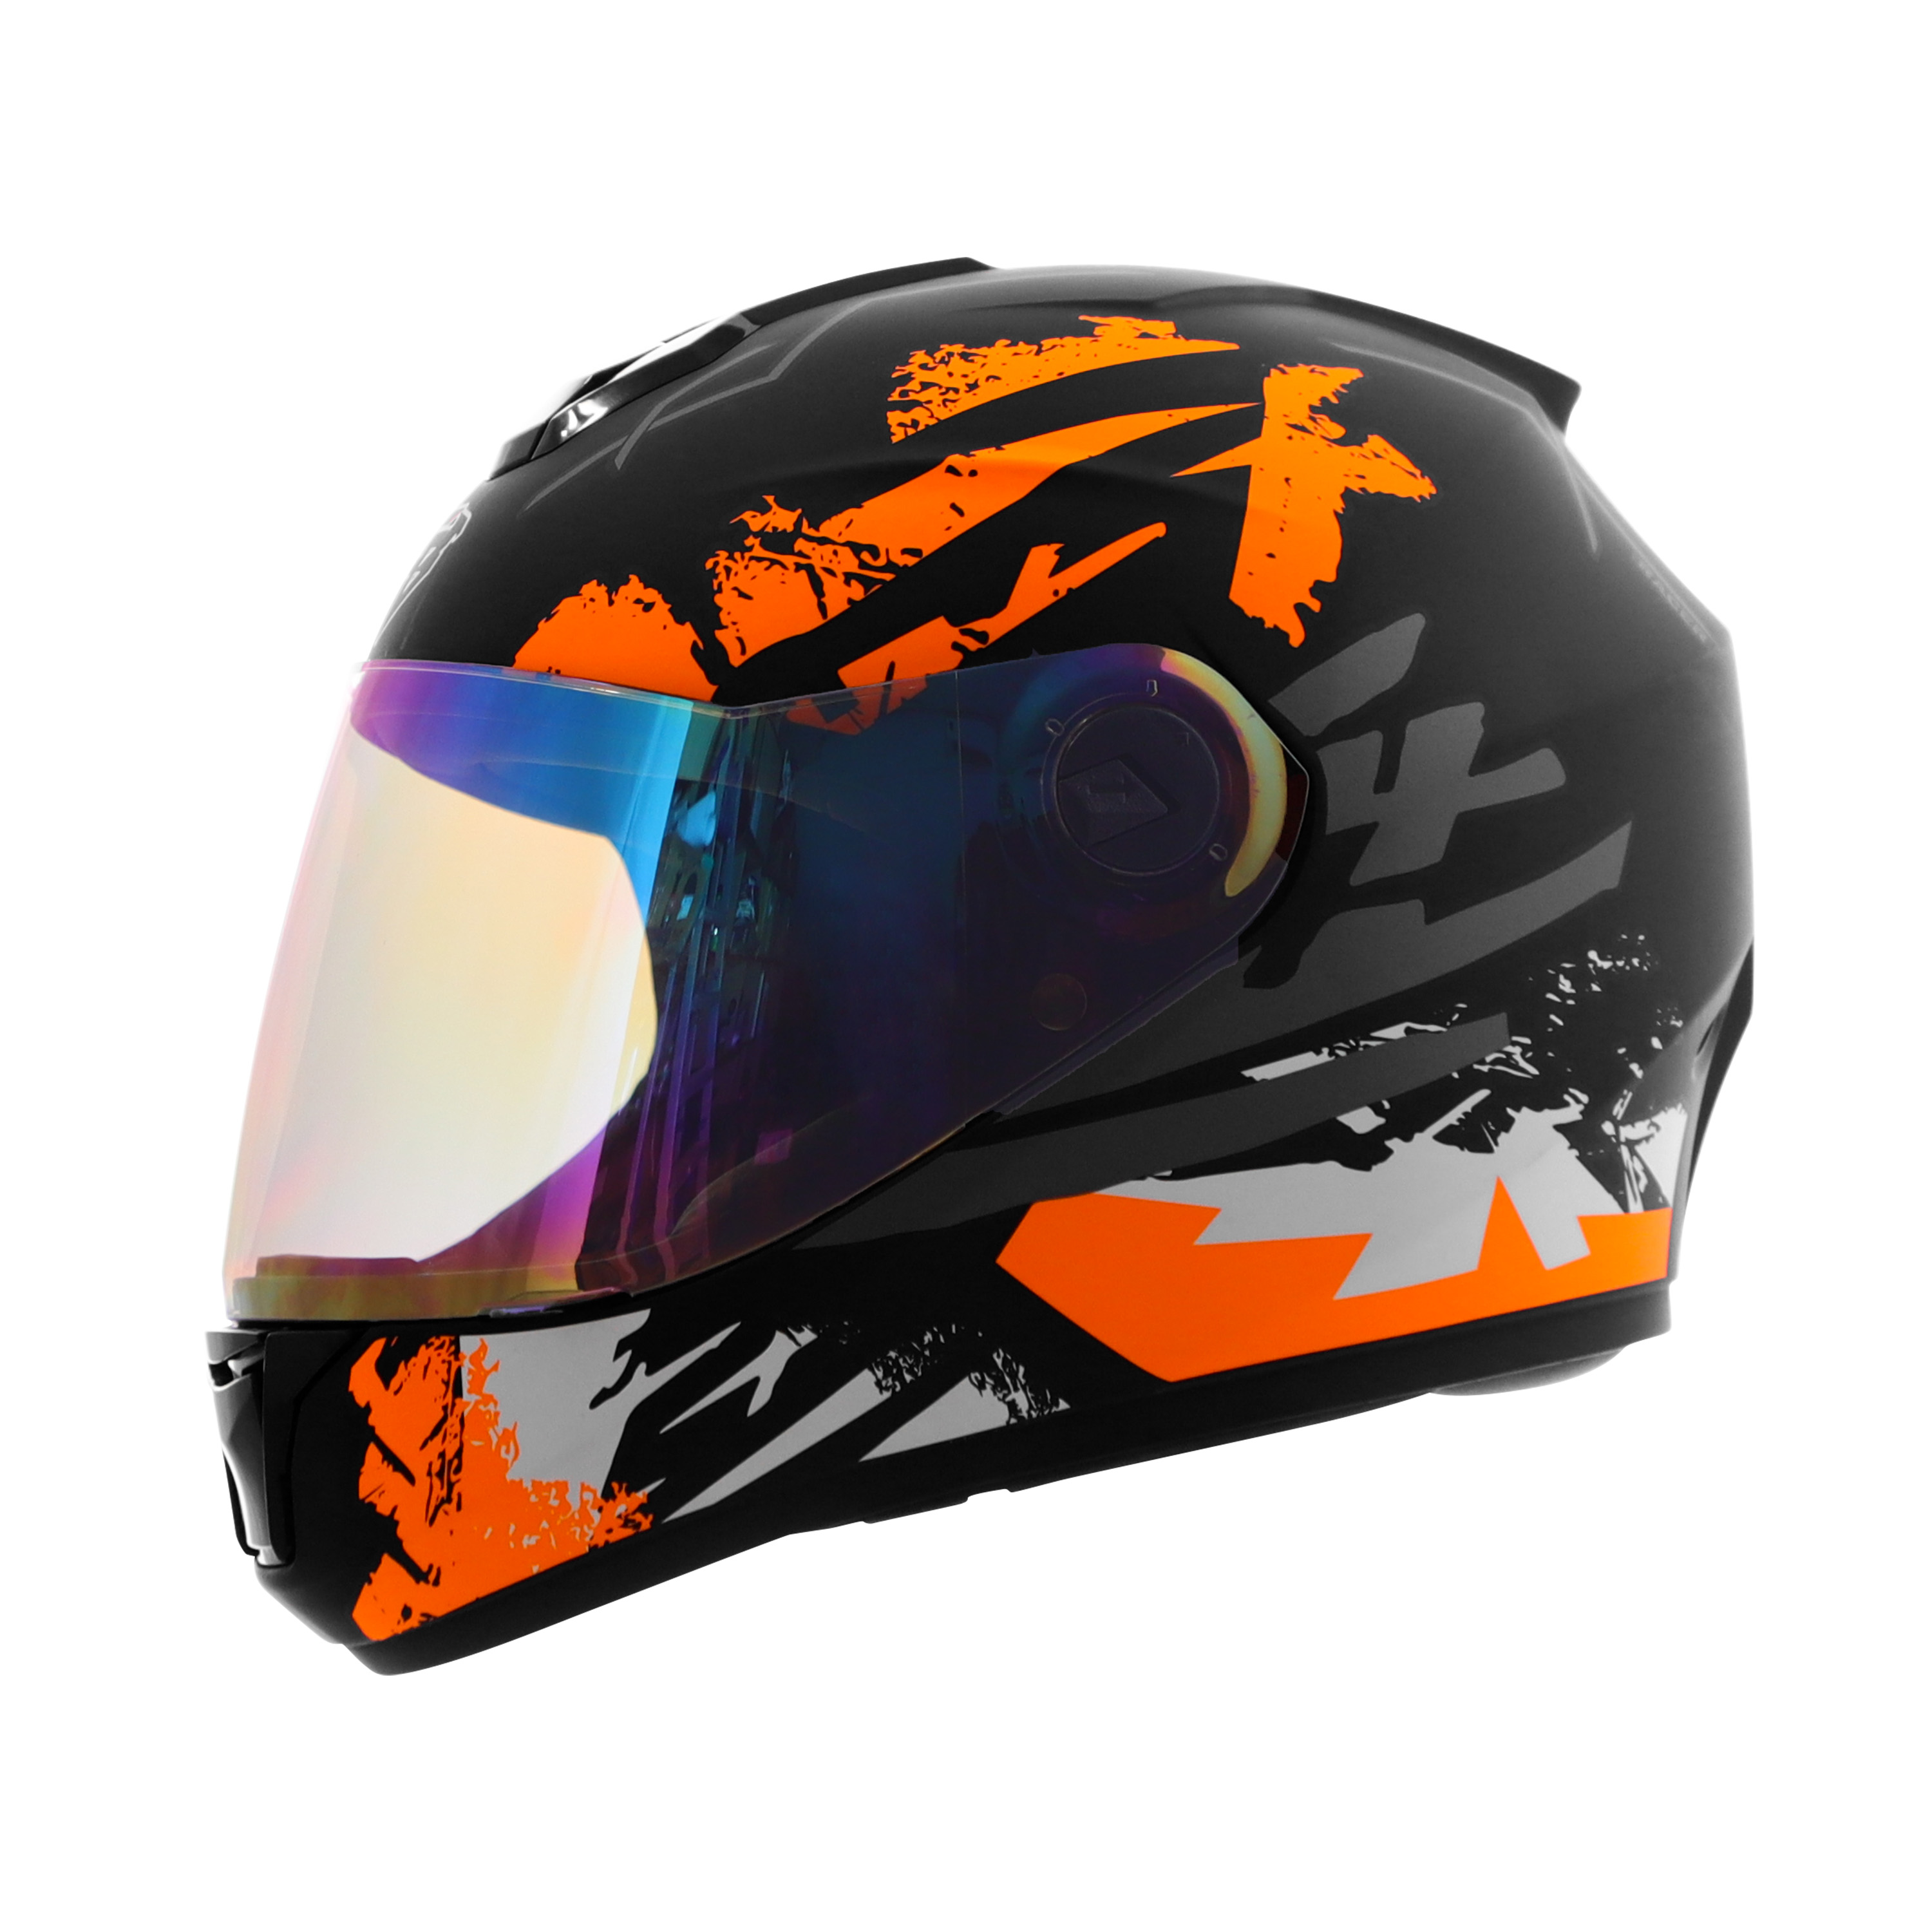 Steelbird SBH-11 Zoom Racer ISI Certified Full Face Graphic Helmet For Men And Women (Matt Black Orange With Chrome Rainbow Visor)